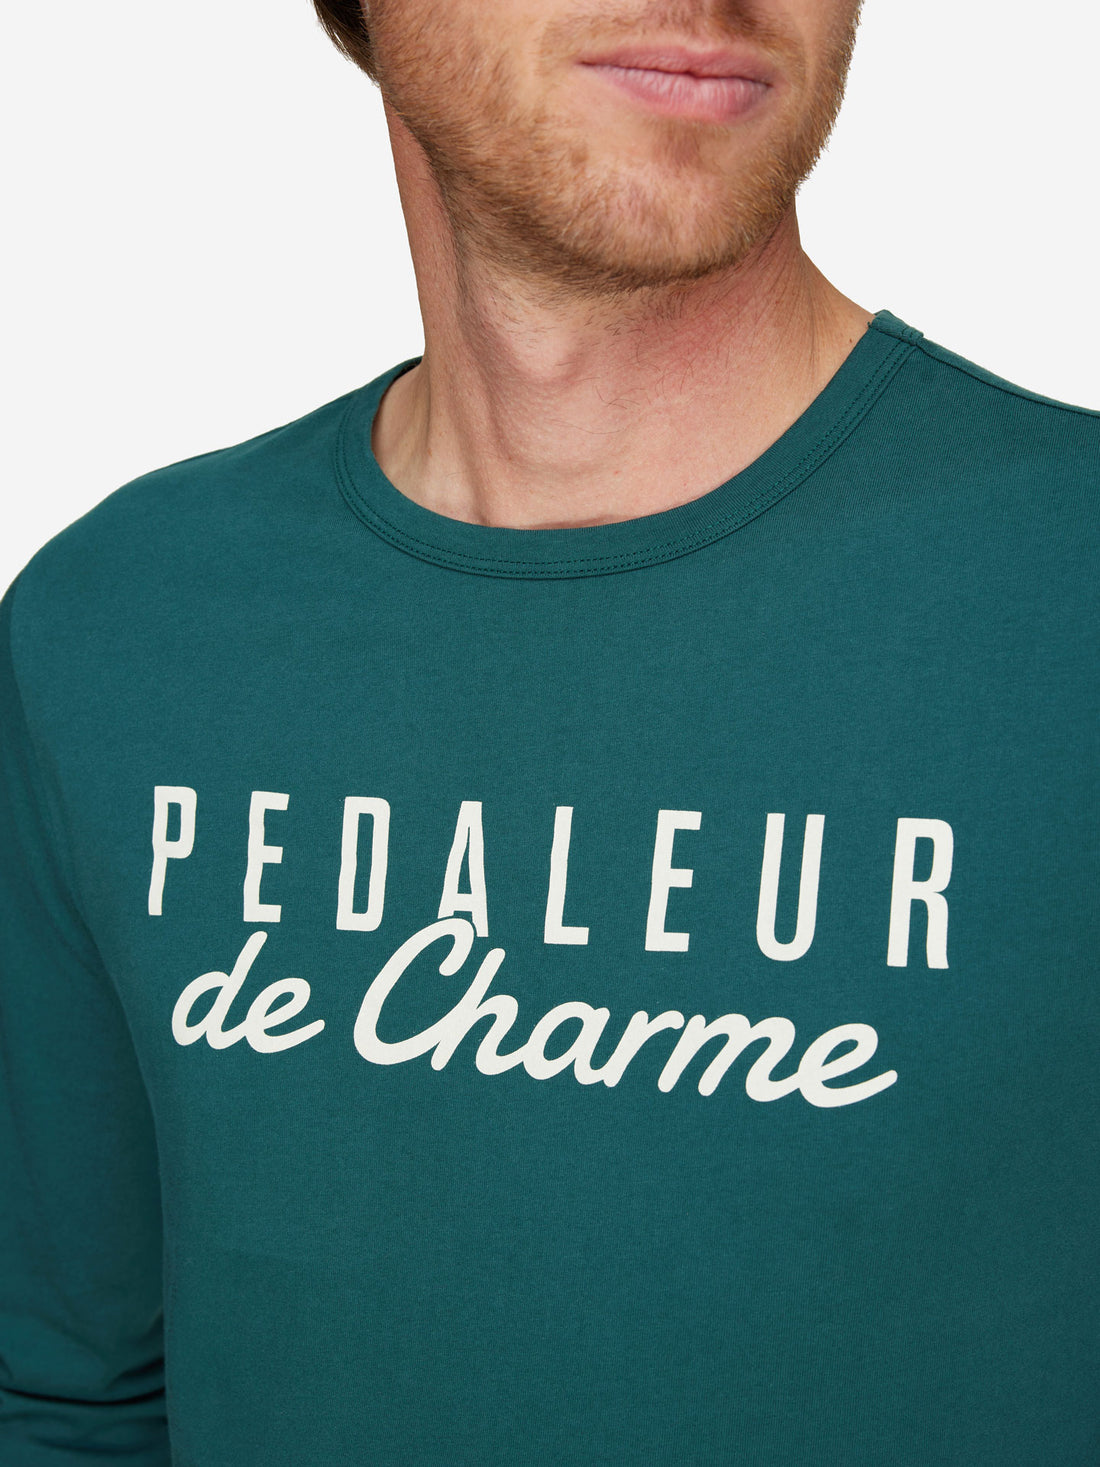 Pédaleur de Charme - Long Sleeve T-shirt